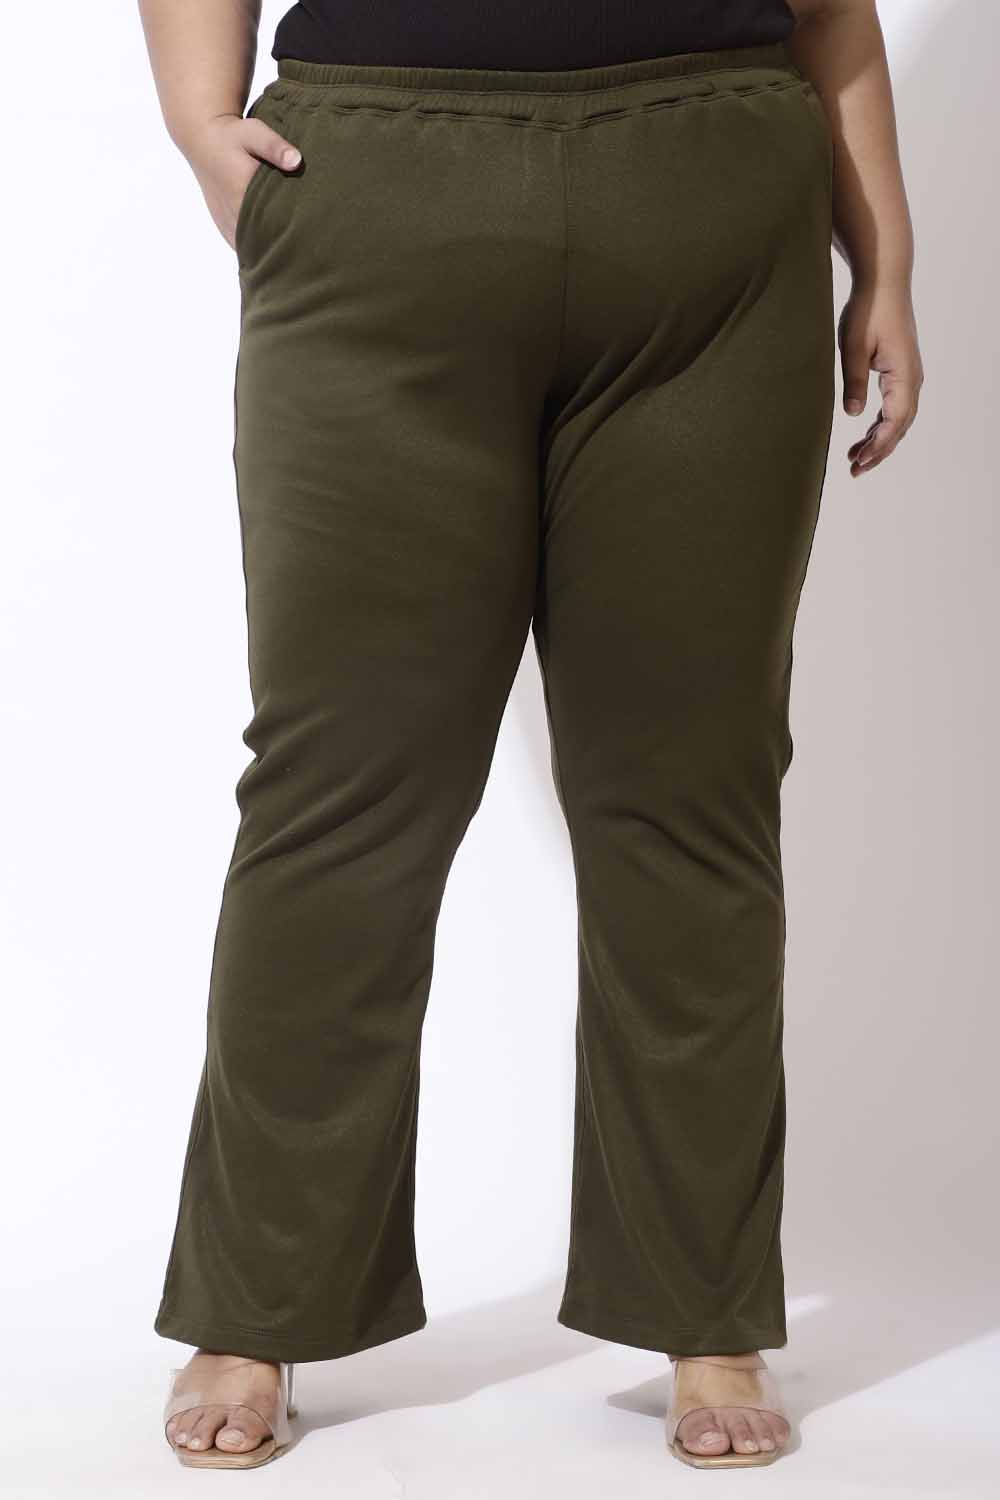 Women's Ripstop Pant | Army Green Women's Pants | Vuori